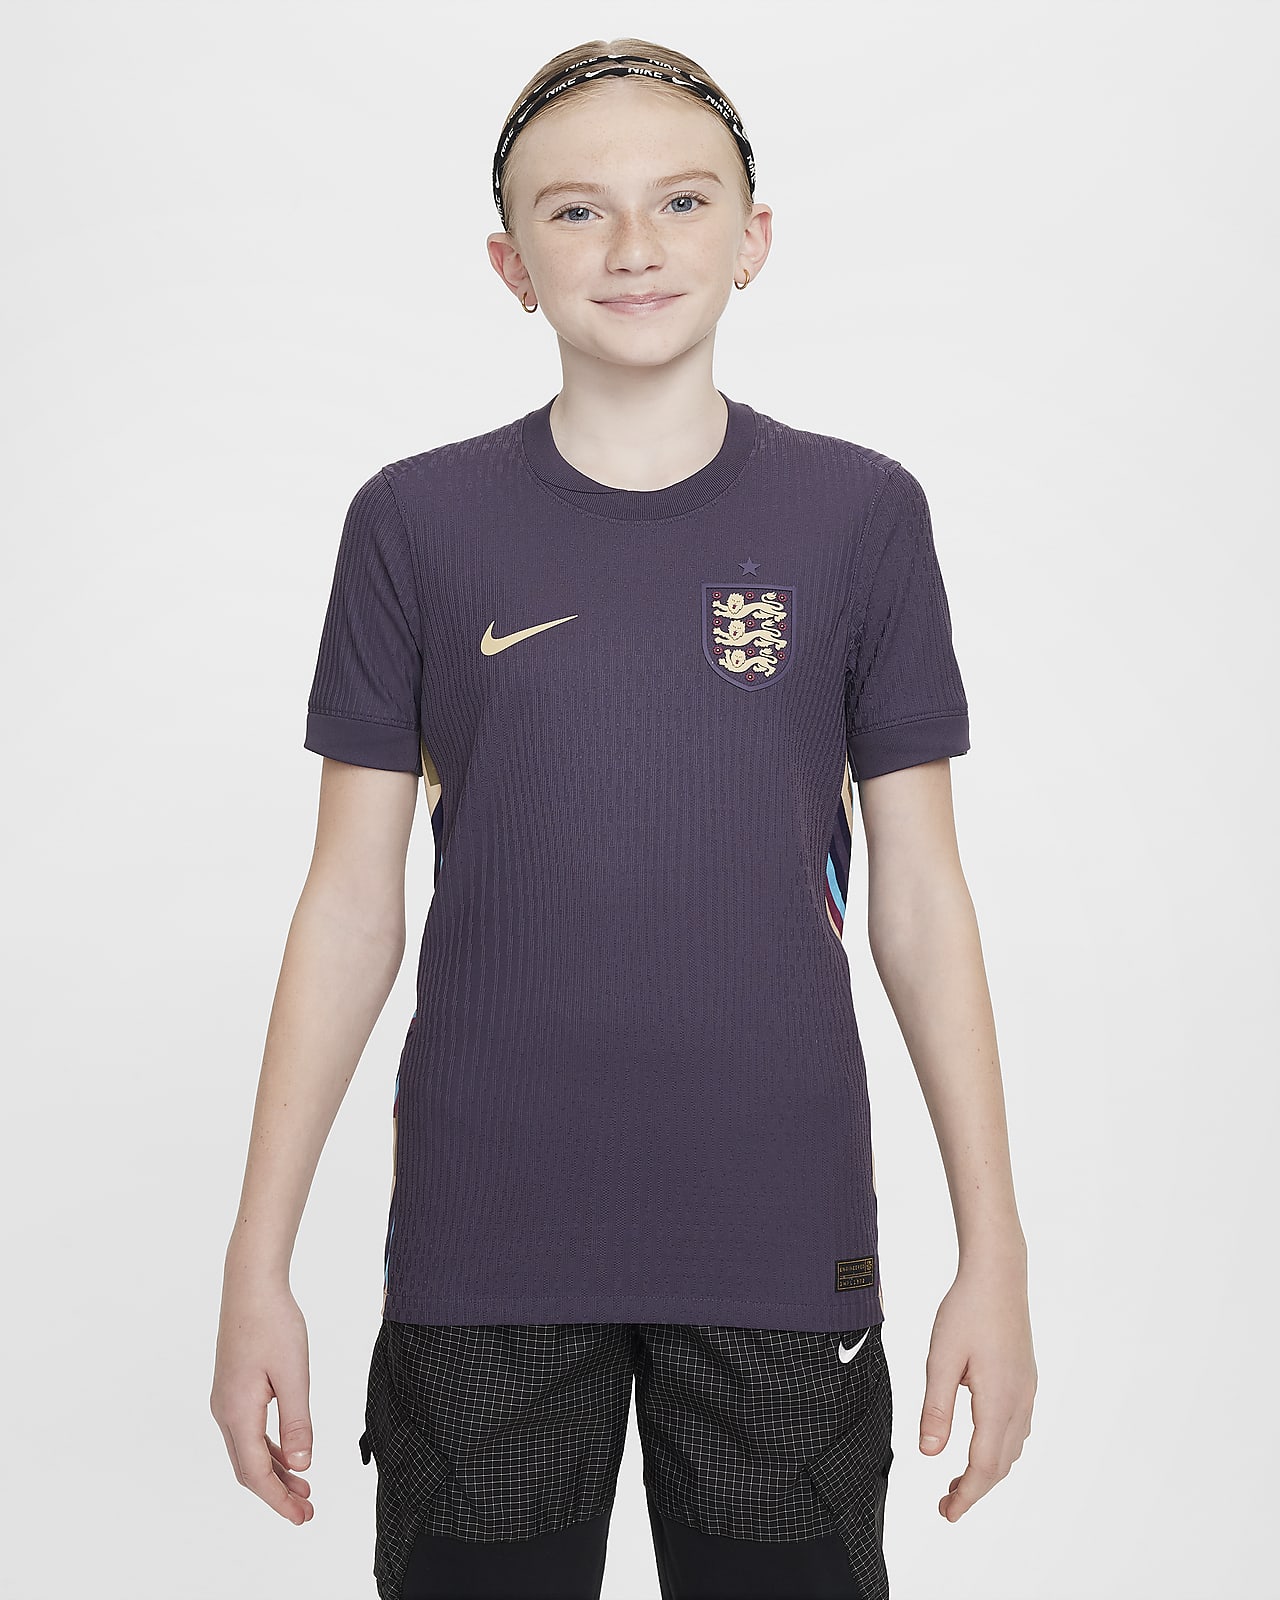 Anglia (férficsapat) 2024/25 Match idegenbeli Nike Dri-FIT ADV eredeti futballmez nagyobb gyerekeknek